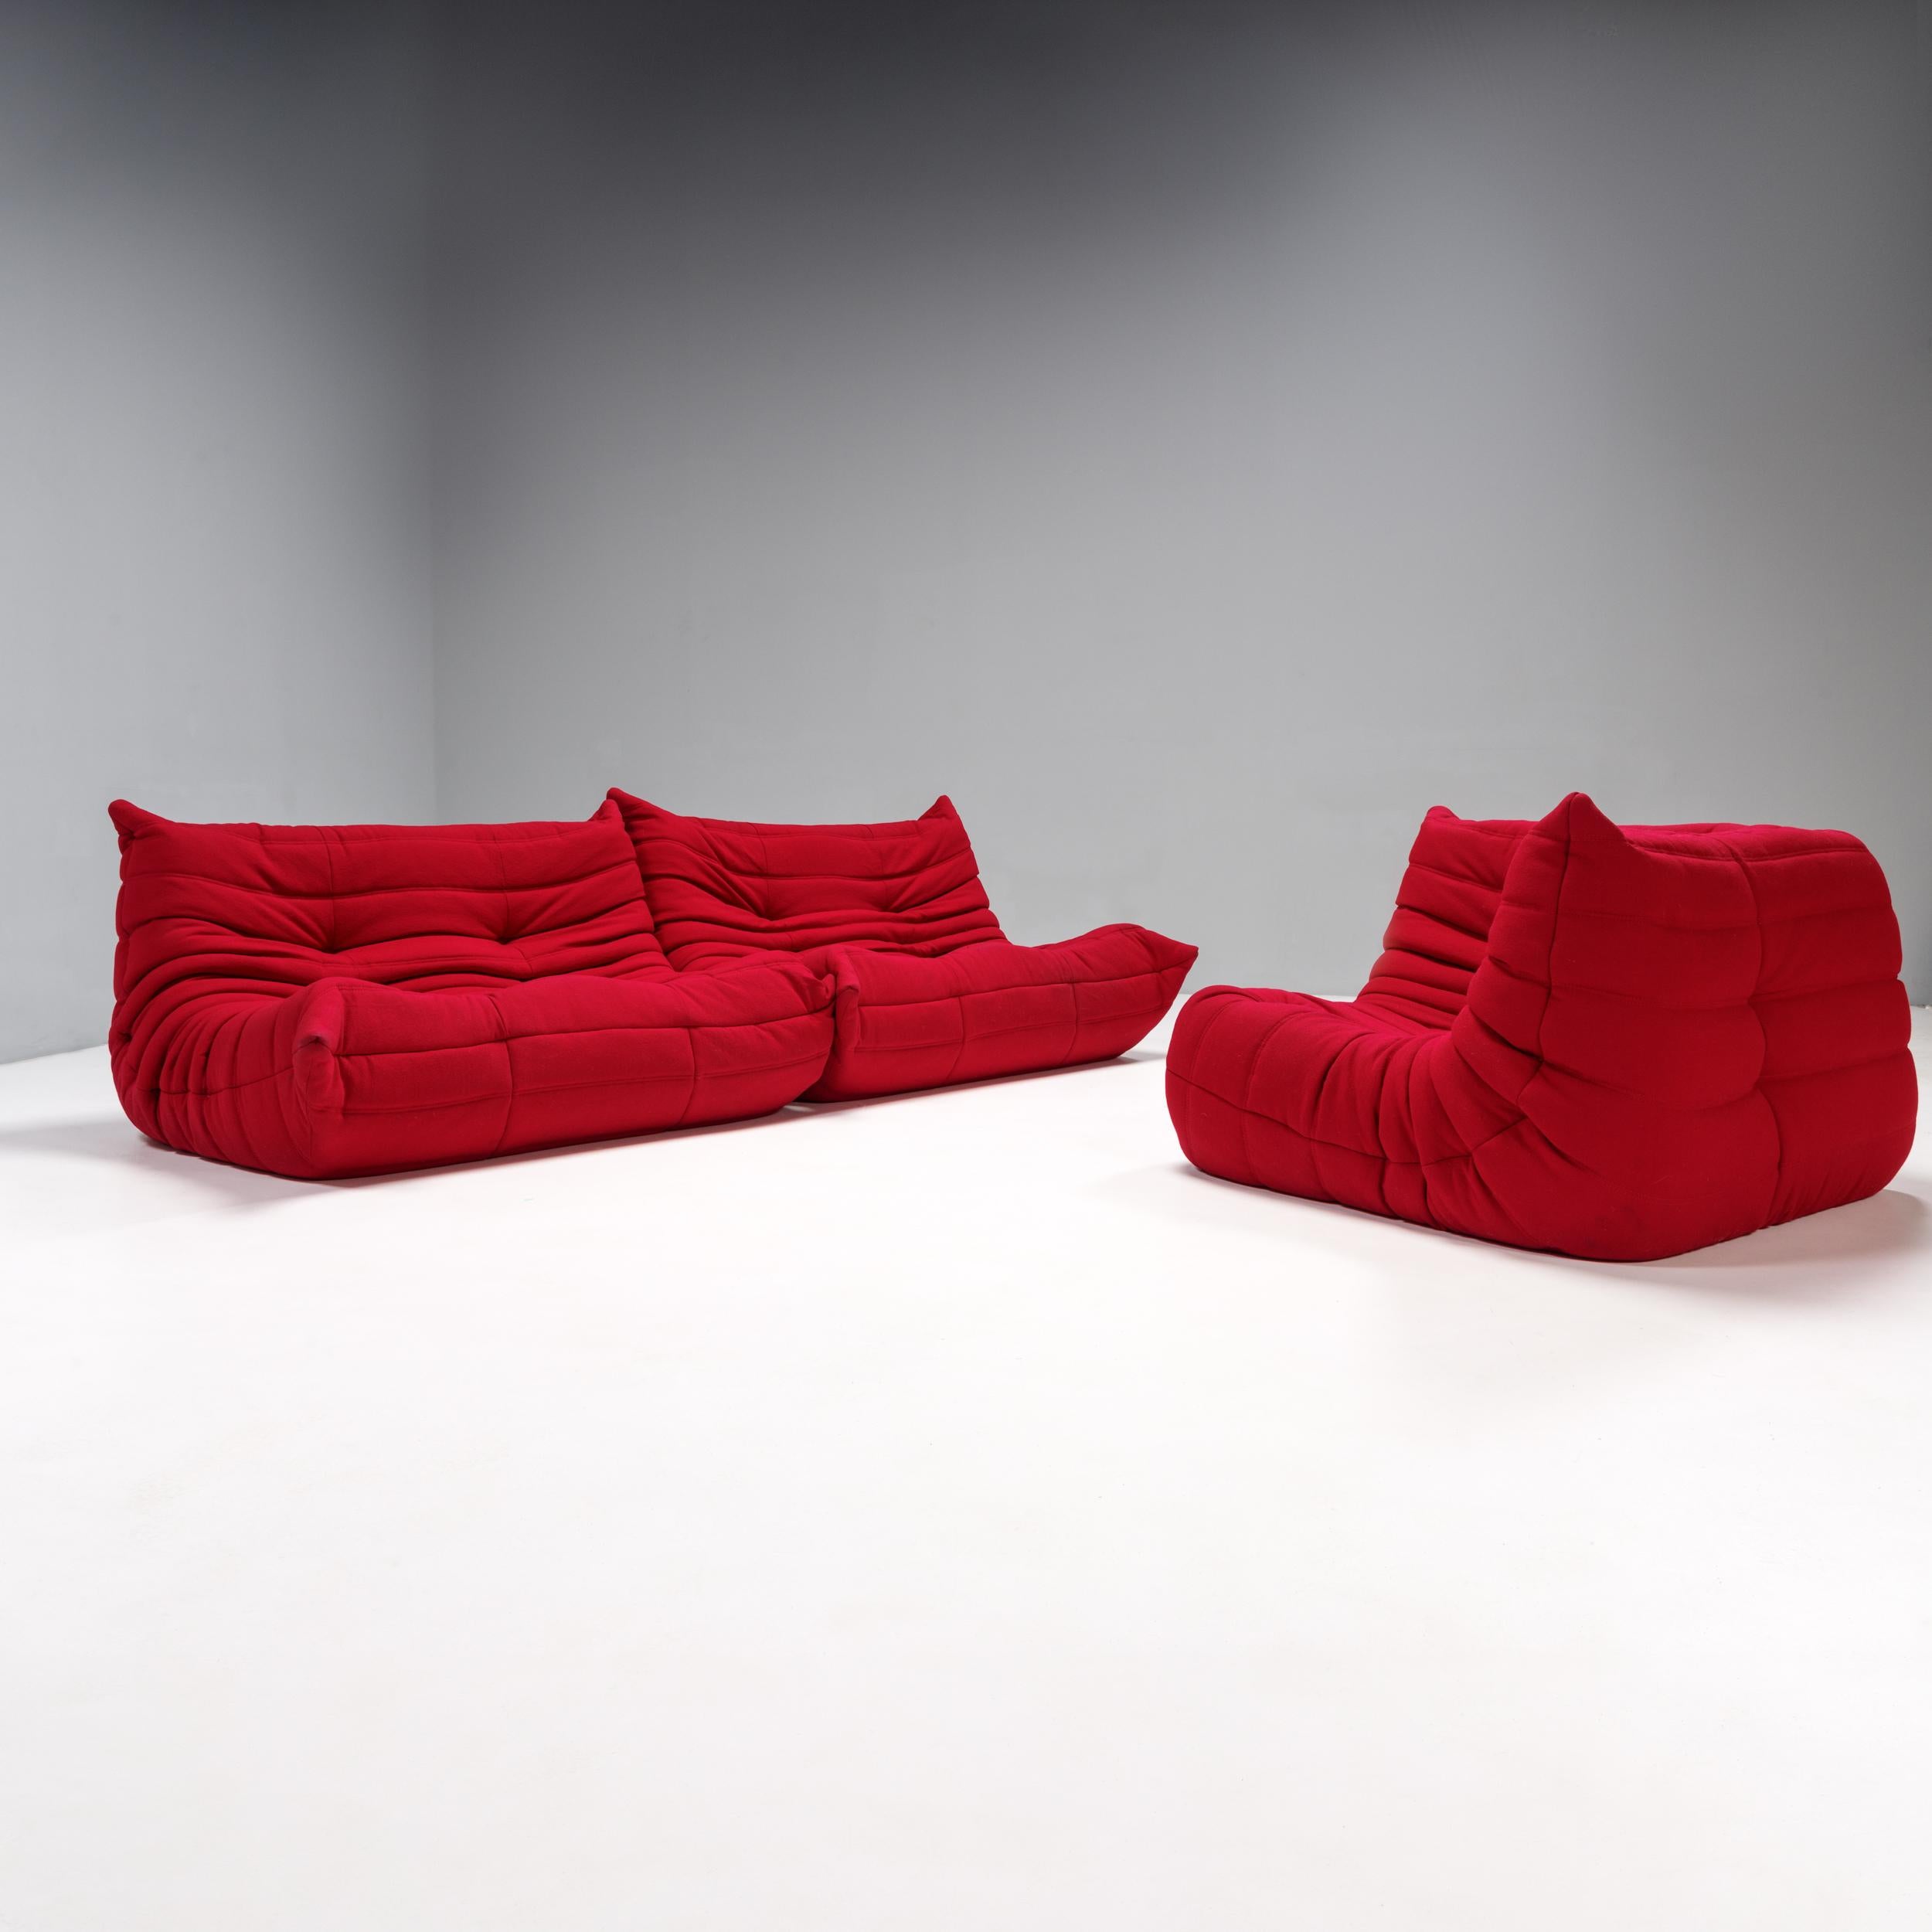 Das ikonische Sofa Togo, ursprünglich von Michel Ducaroy für Ligne Roset im Jahr 1973 entworfen, ist ein Designklassiker.

Dieses dreiteilige modulare Set ist unglaublich vielseitig und kann zu einem großen Ecksofa konfiguriert oder für eine